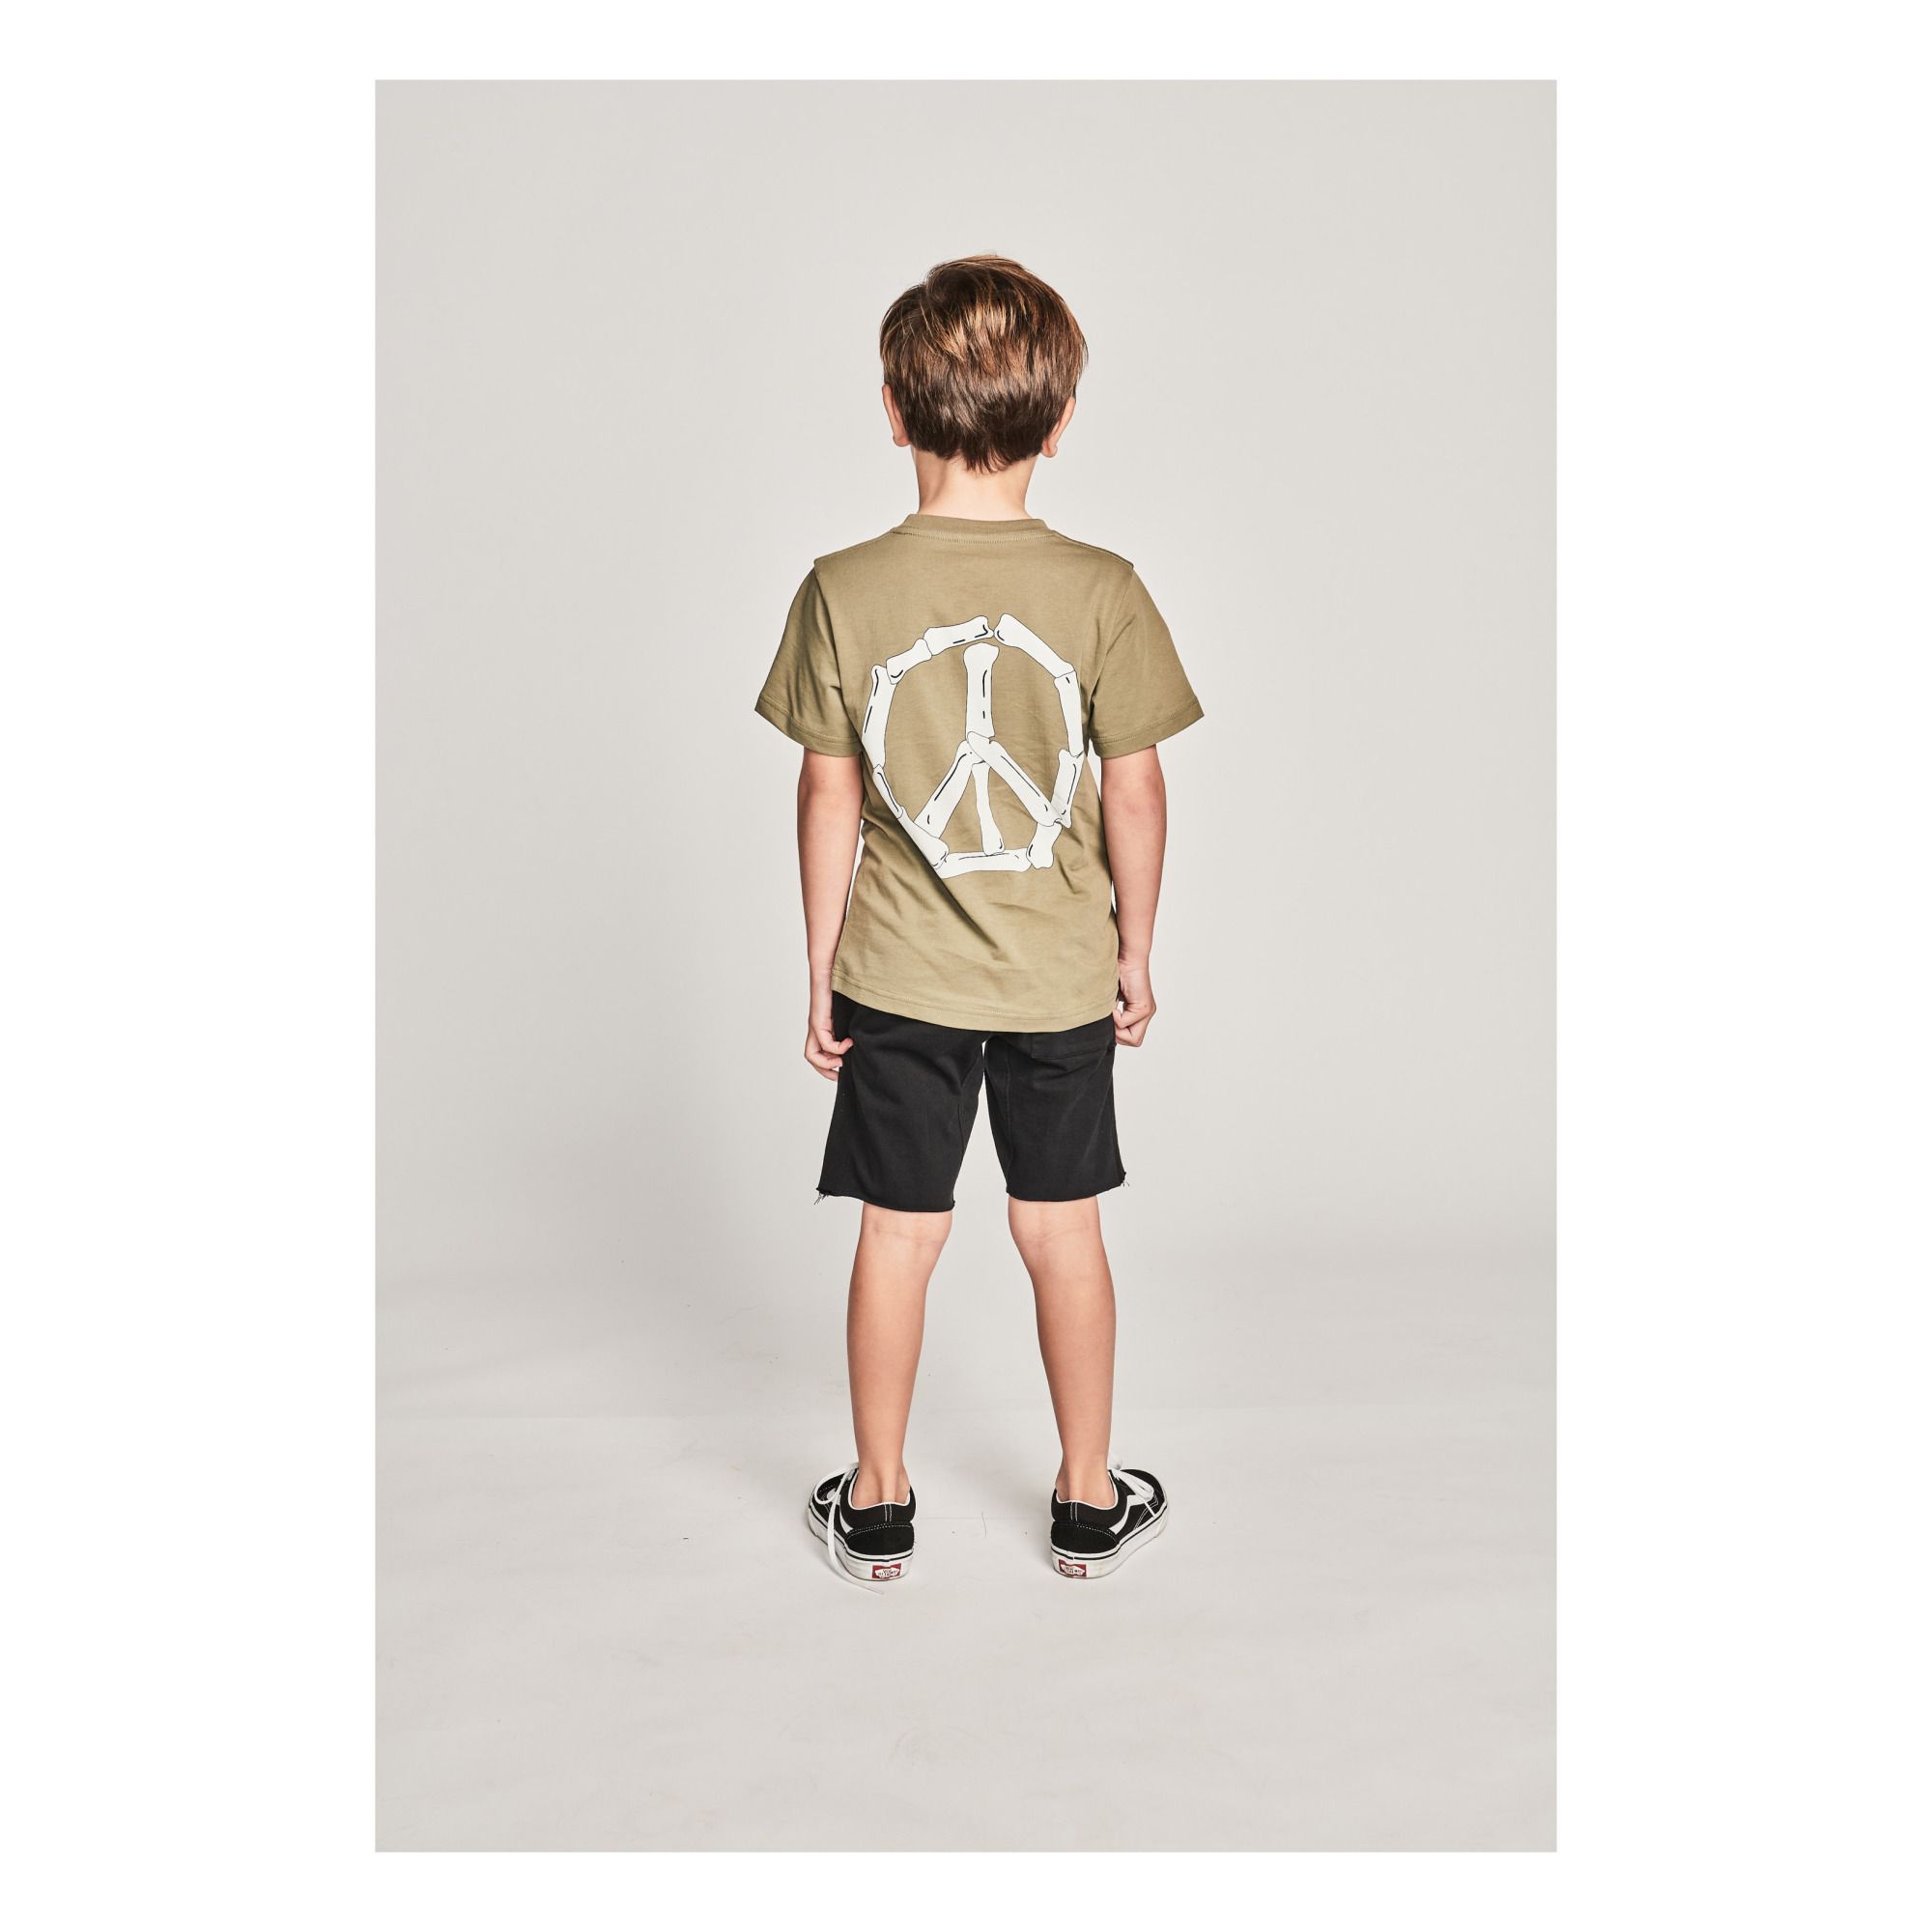 Camiseta Peaceout Verde oliva- Imagen del producto n°2